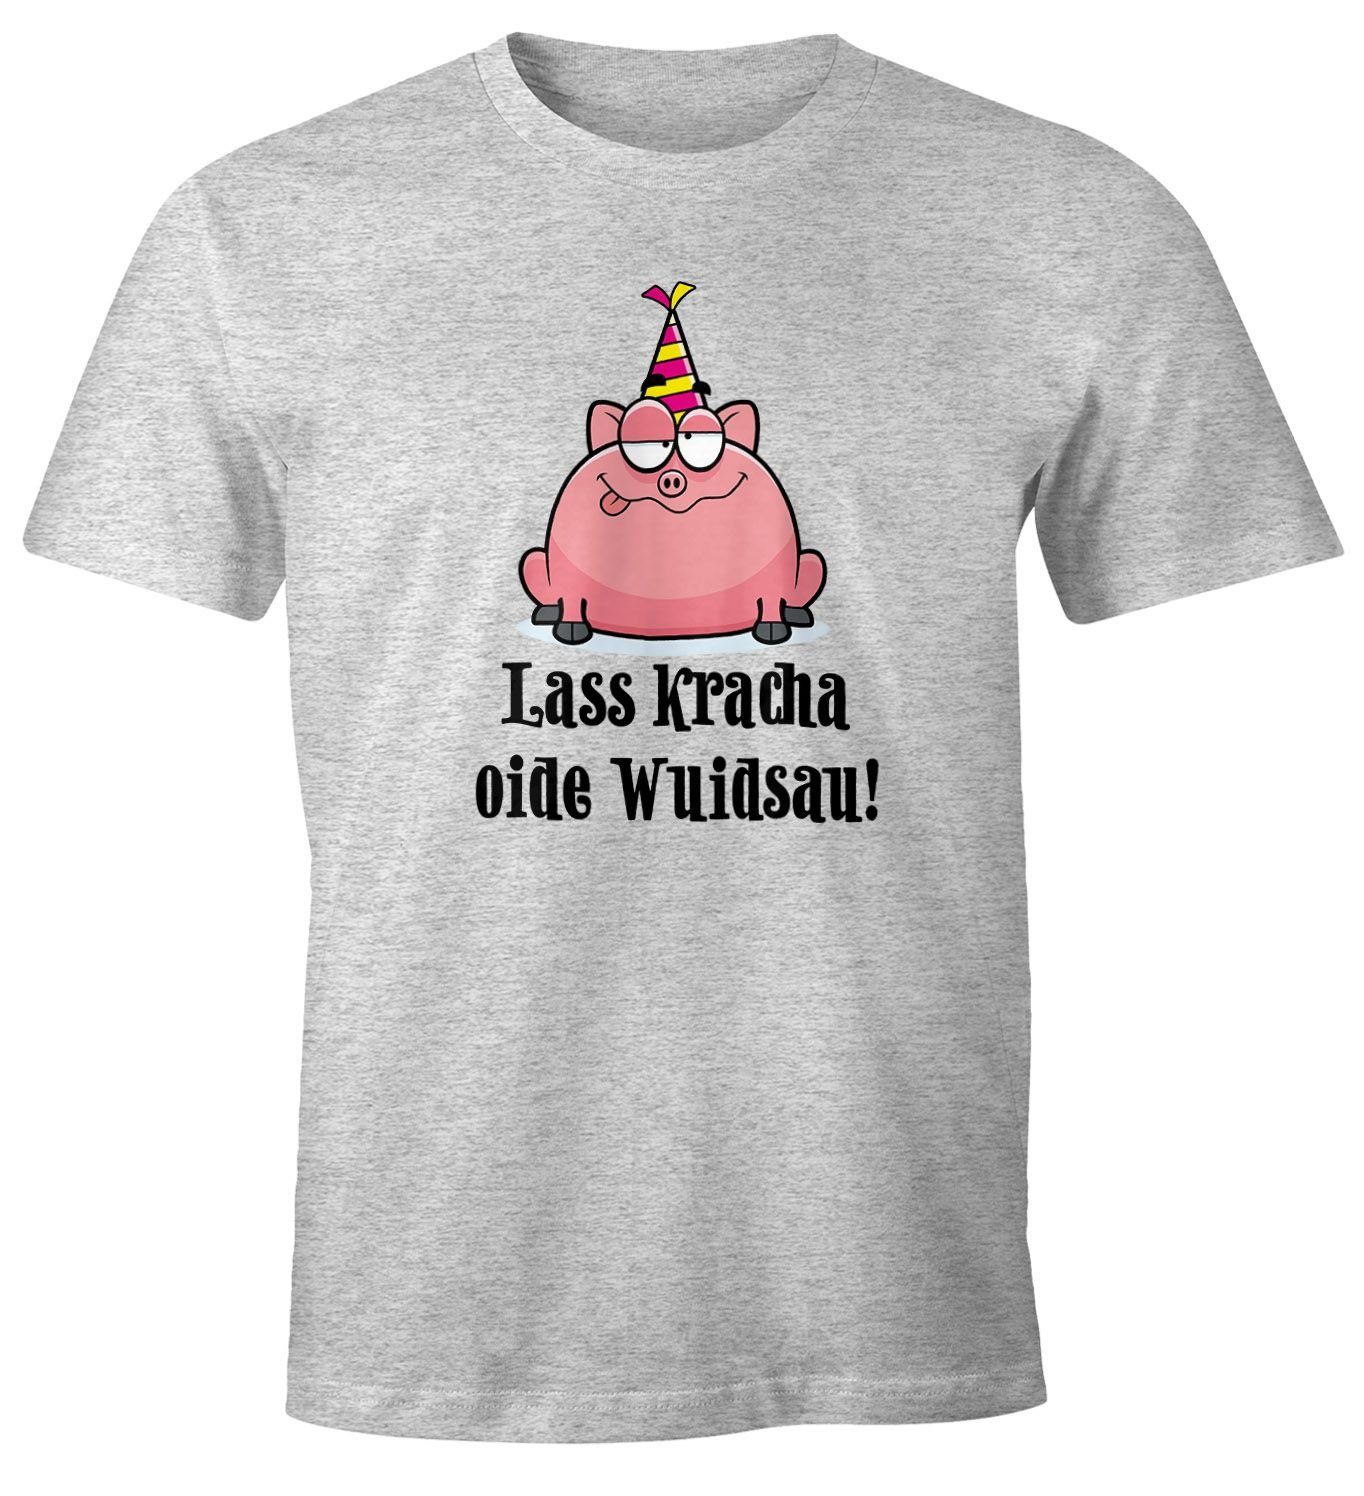 MoonWorks Print-Shirt Herren T-Shirt Geburtstag Schwein Spruch Lass kracha oide Wuidsau Fun-Shirt Geschenk Moonworks® mit Print grau